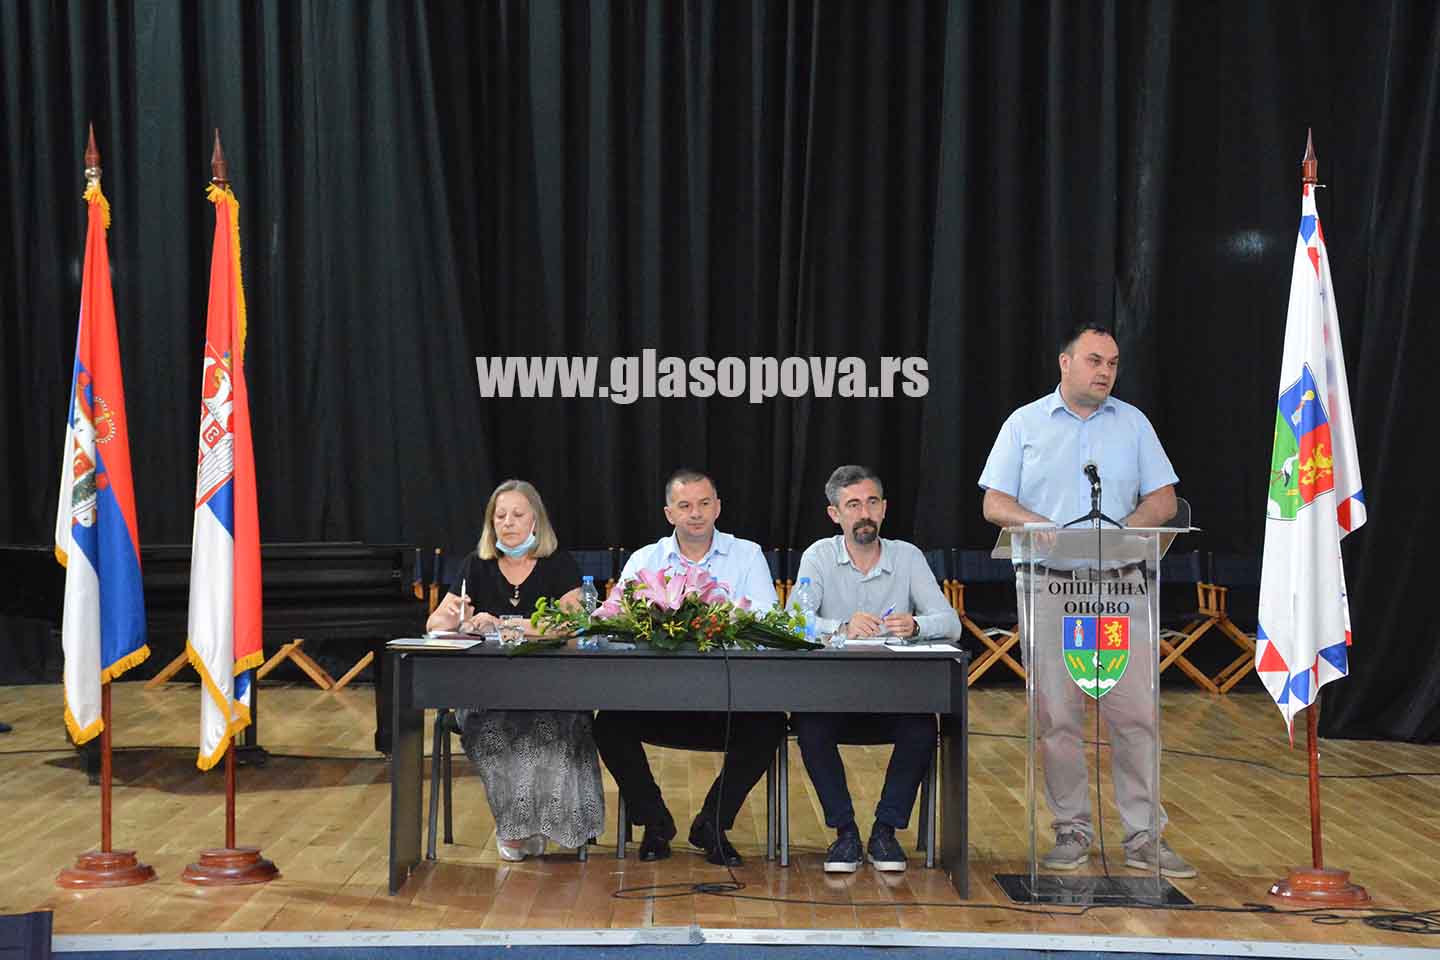 Skupština opštine Opovo: Aleksandar Veselinov izabran za većnika, Jelena Petrović postavljena za sekretara Skupštine